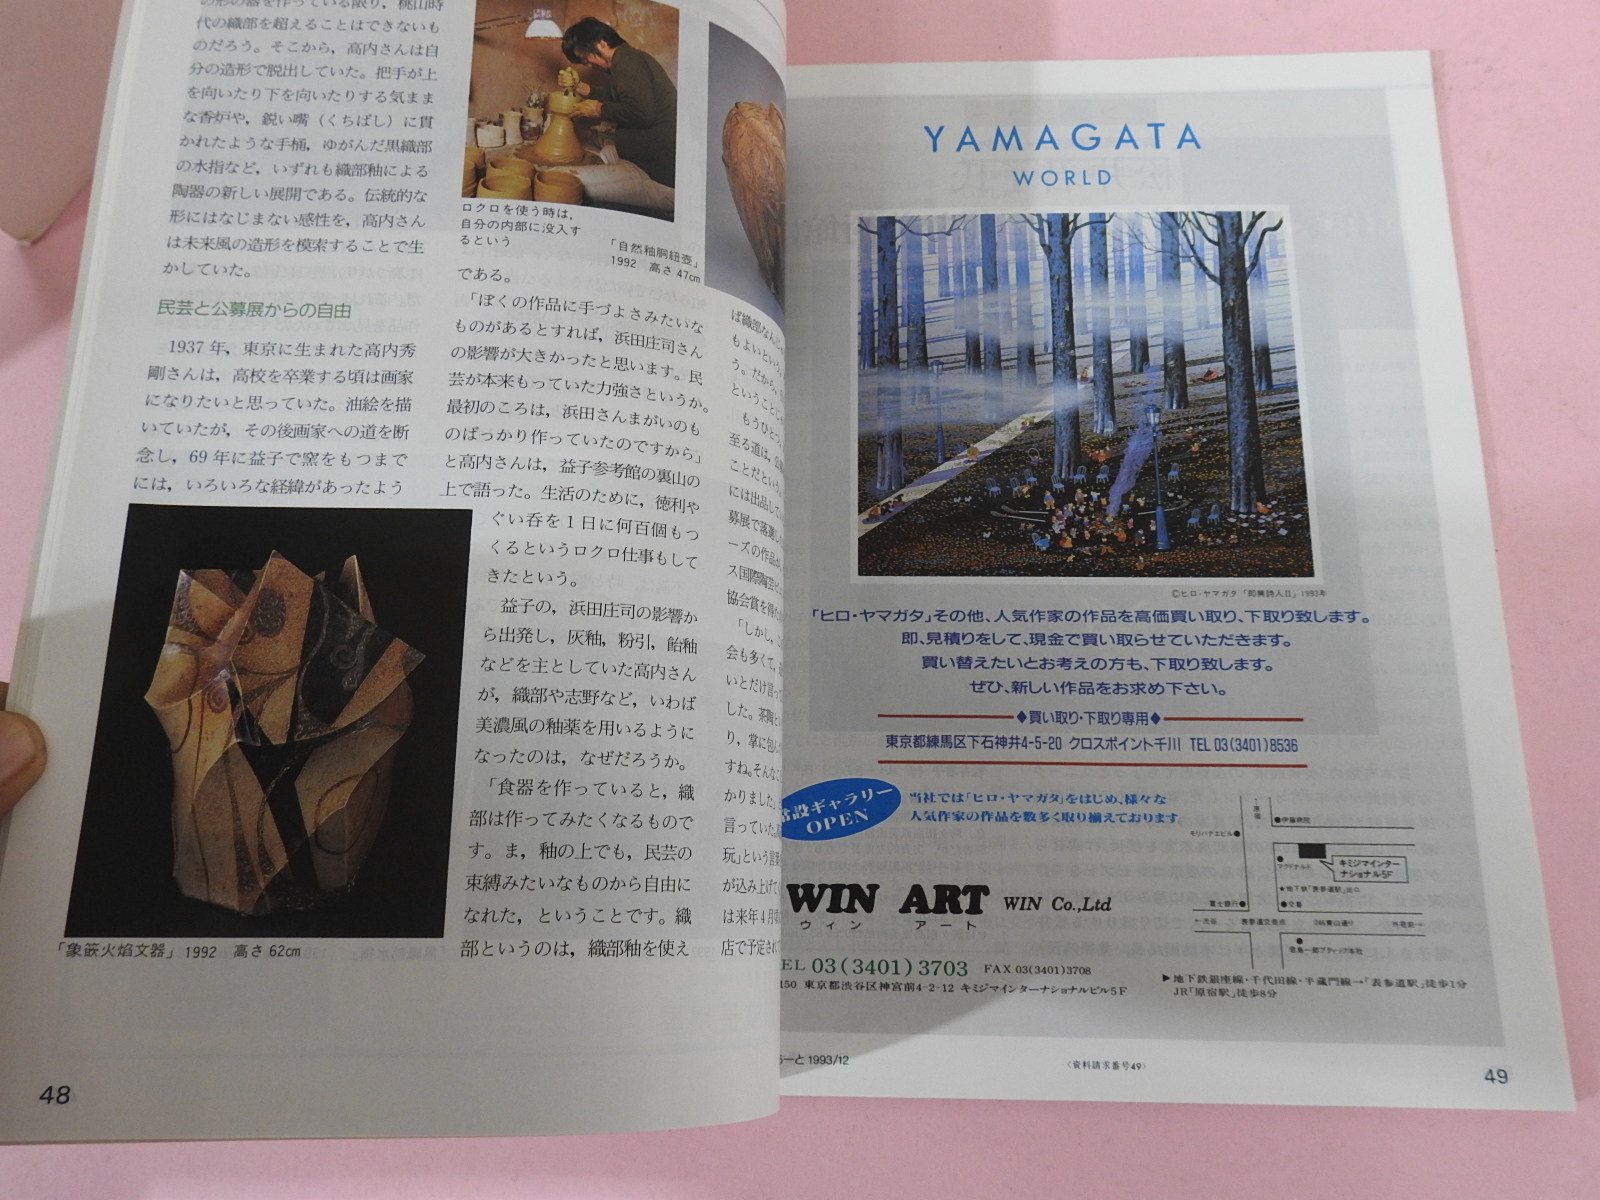 1993년 일본 미술잡지 도록